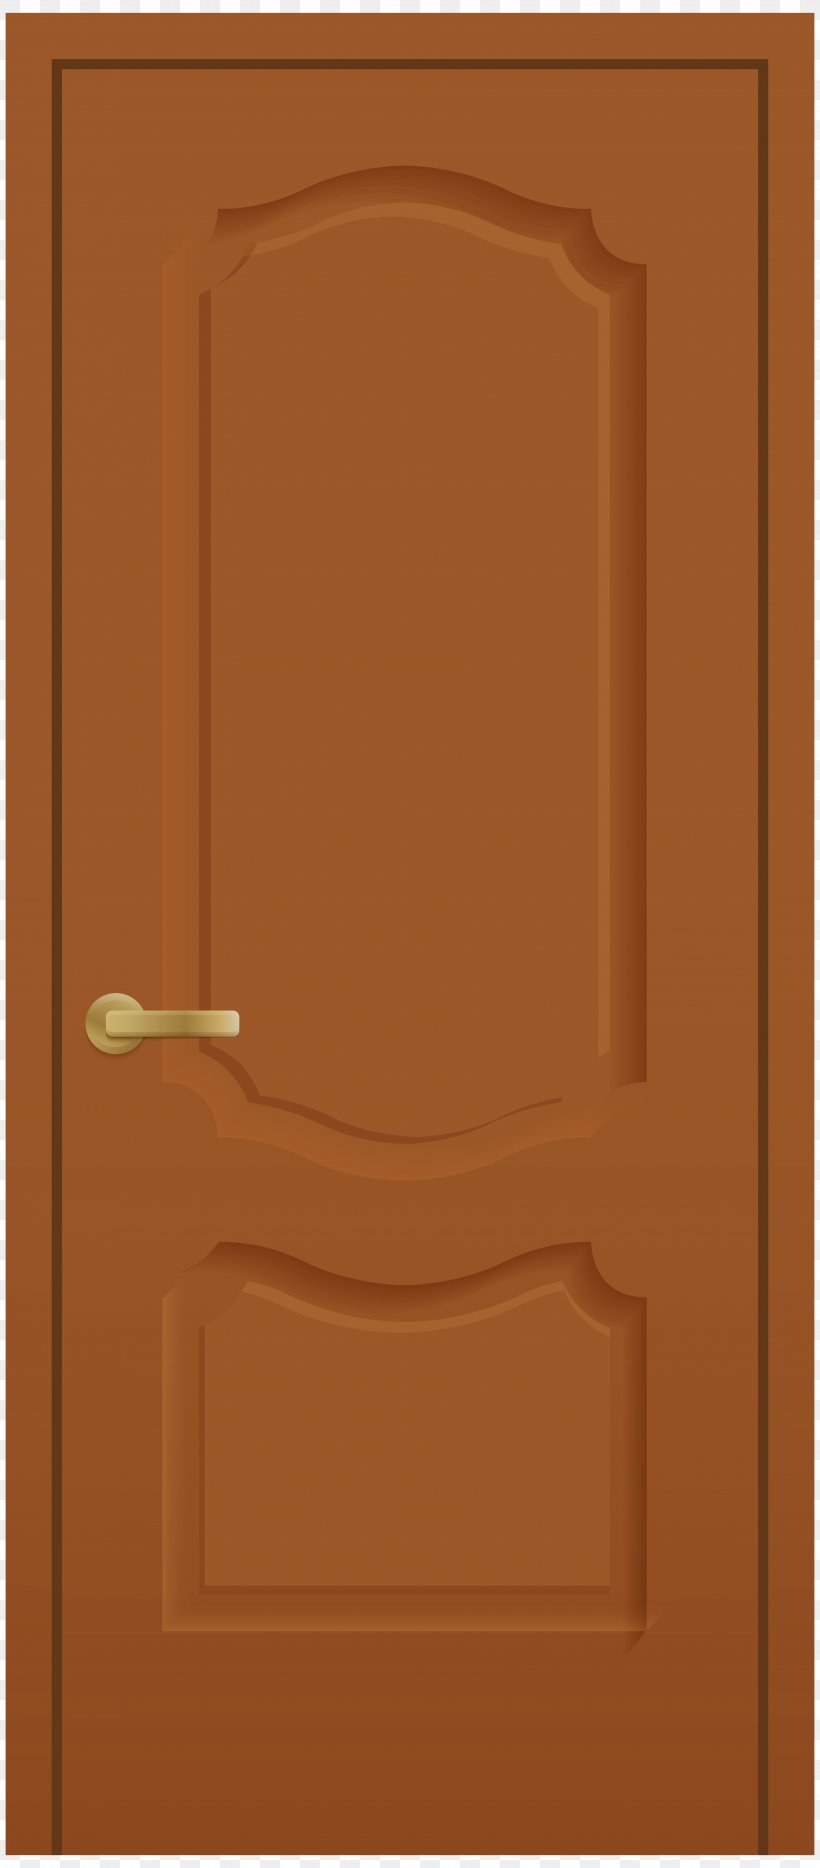 Door Window Clip Art, PNG, 3510x8000px, Door, Brown, Garage Doors, Hinge, Orange Download Free